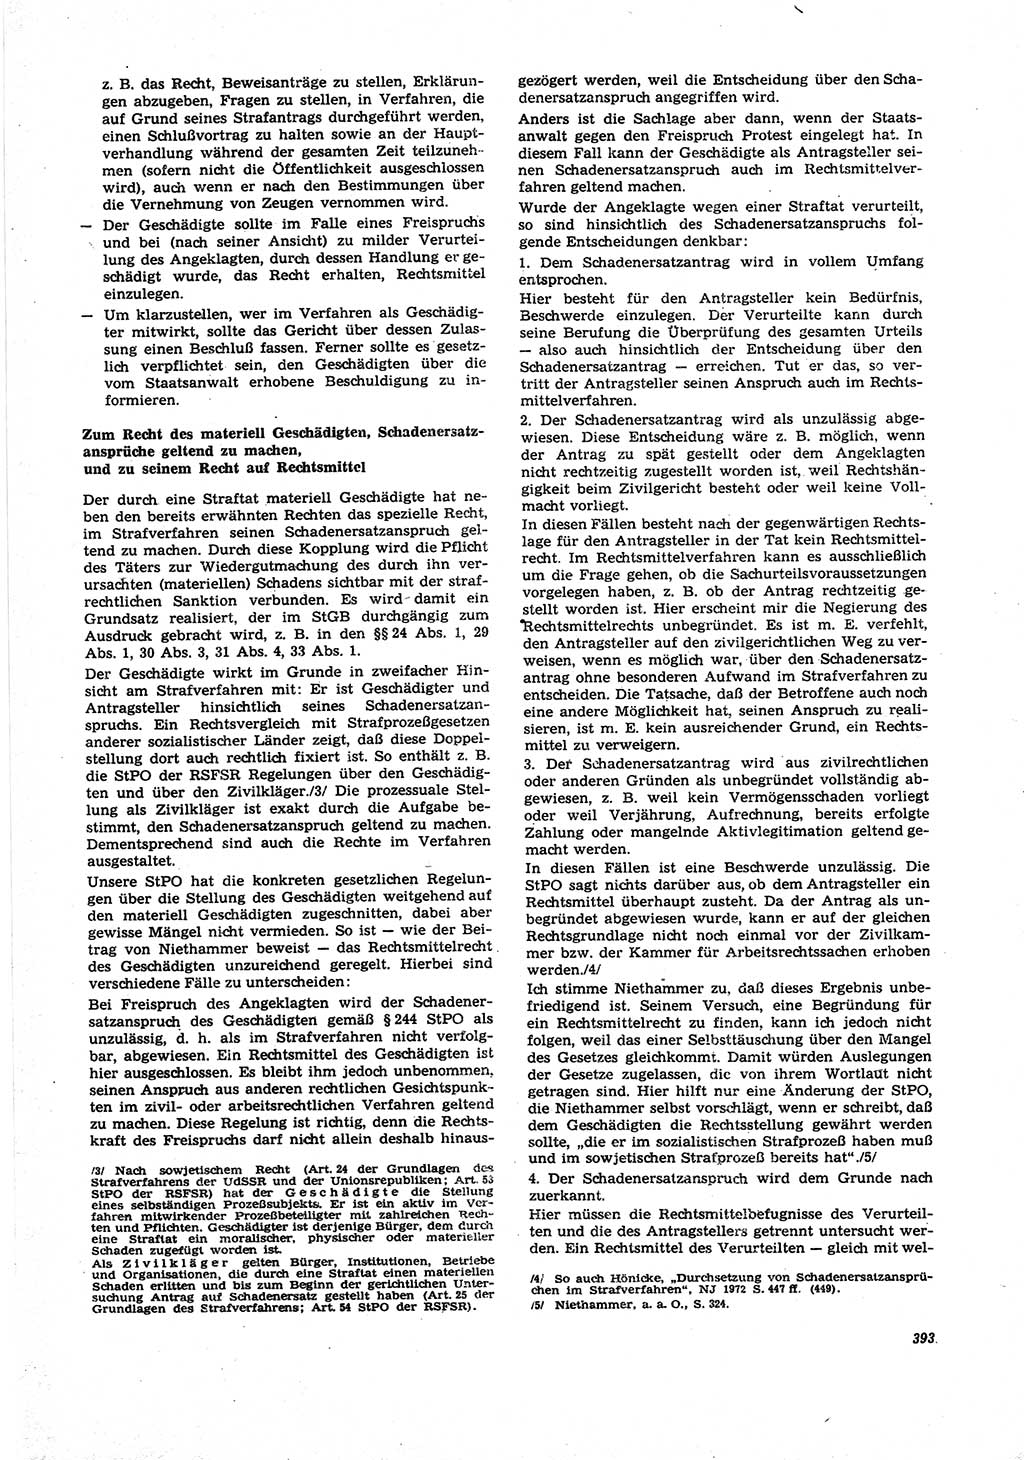 Neue Justiz (NJ), Zeitschrift für Recht und Rechtswissenschaft [Deutsche Demokratische Republik (DDR)], 27. Jahrgang 1973, Seite 393 (NJ DDR 1973, S. 393)